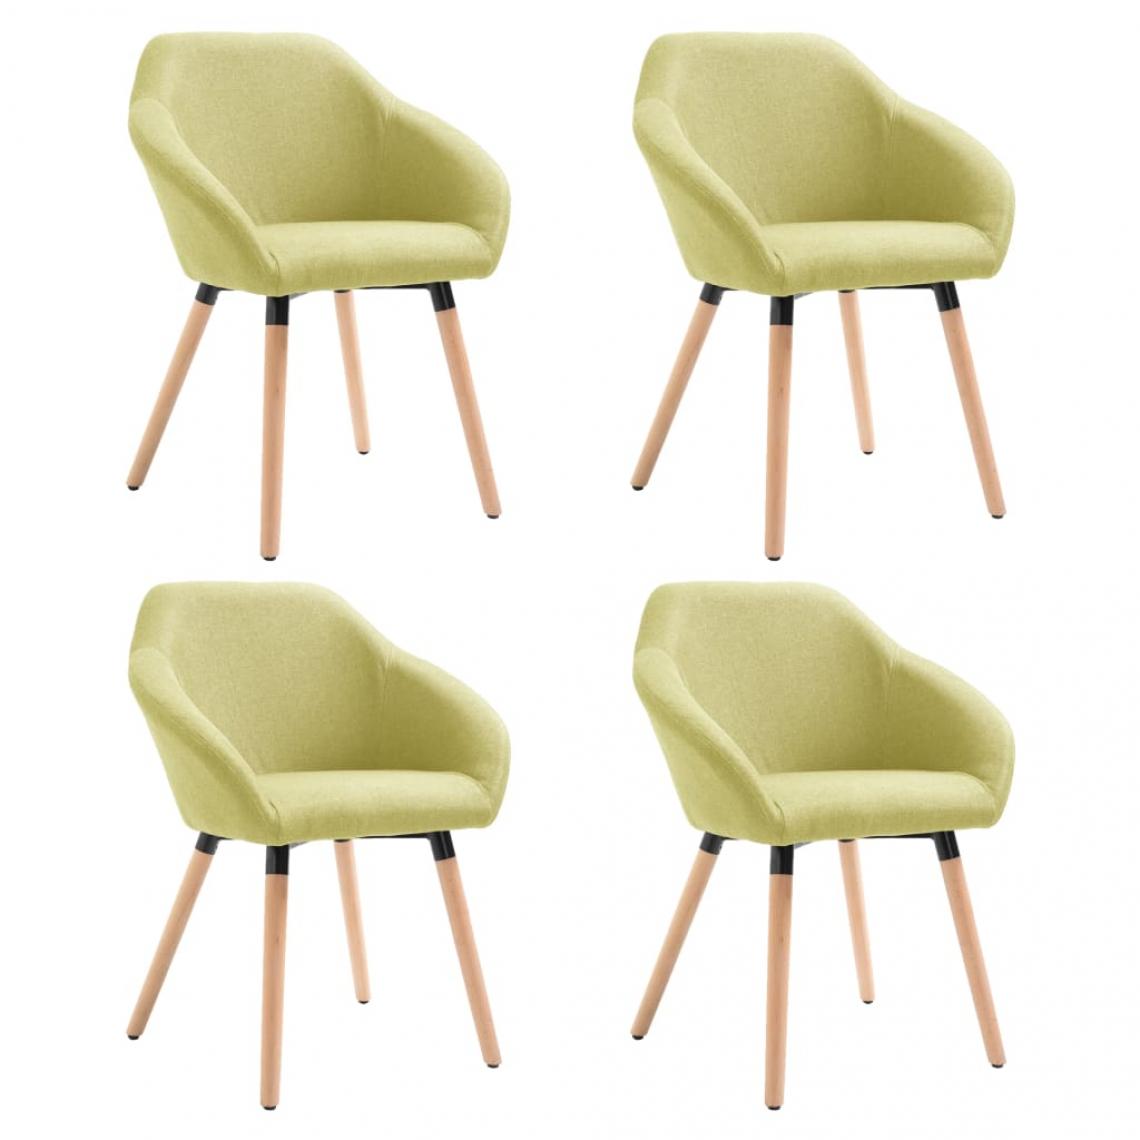 Decoshop26 - Lot de 4 chaises de salle à manger cuisine design moderne tissu vert CDS022048 - Chaises